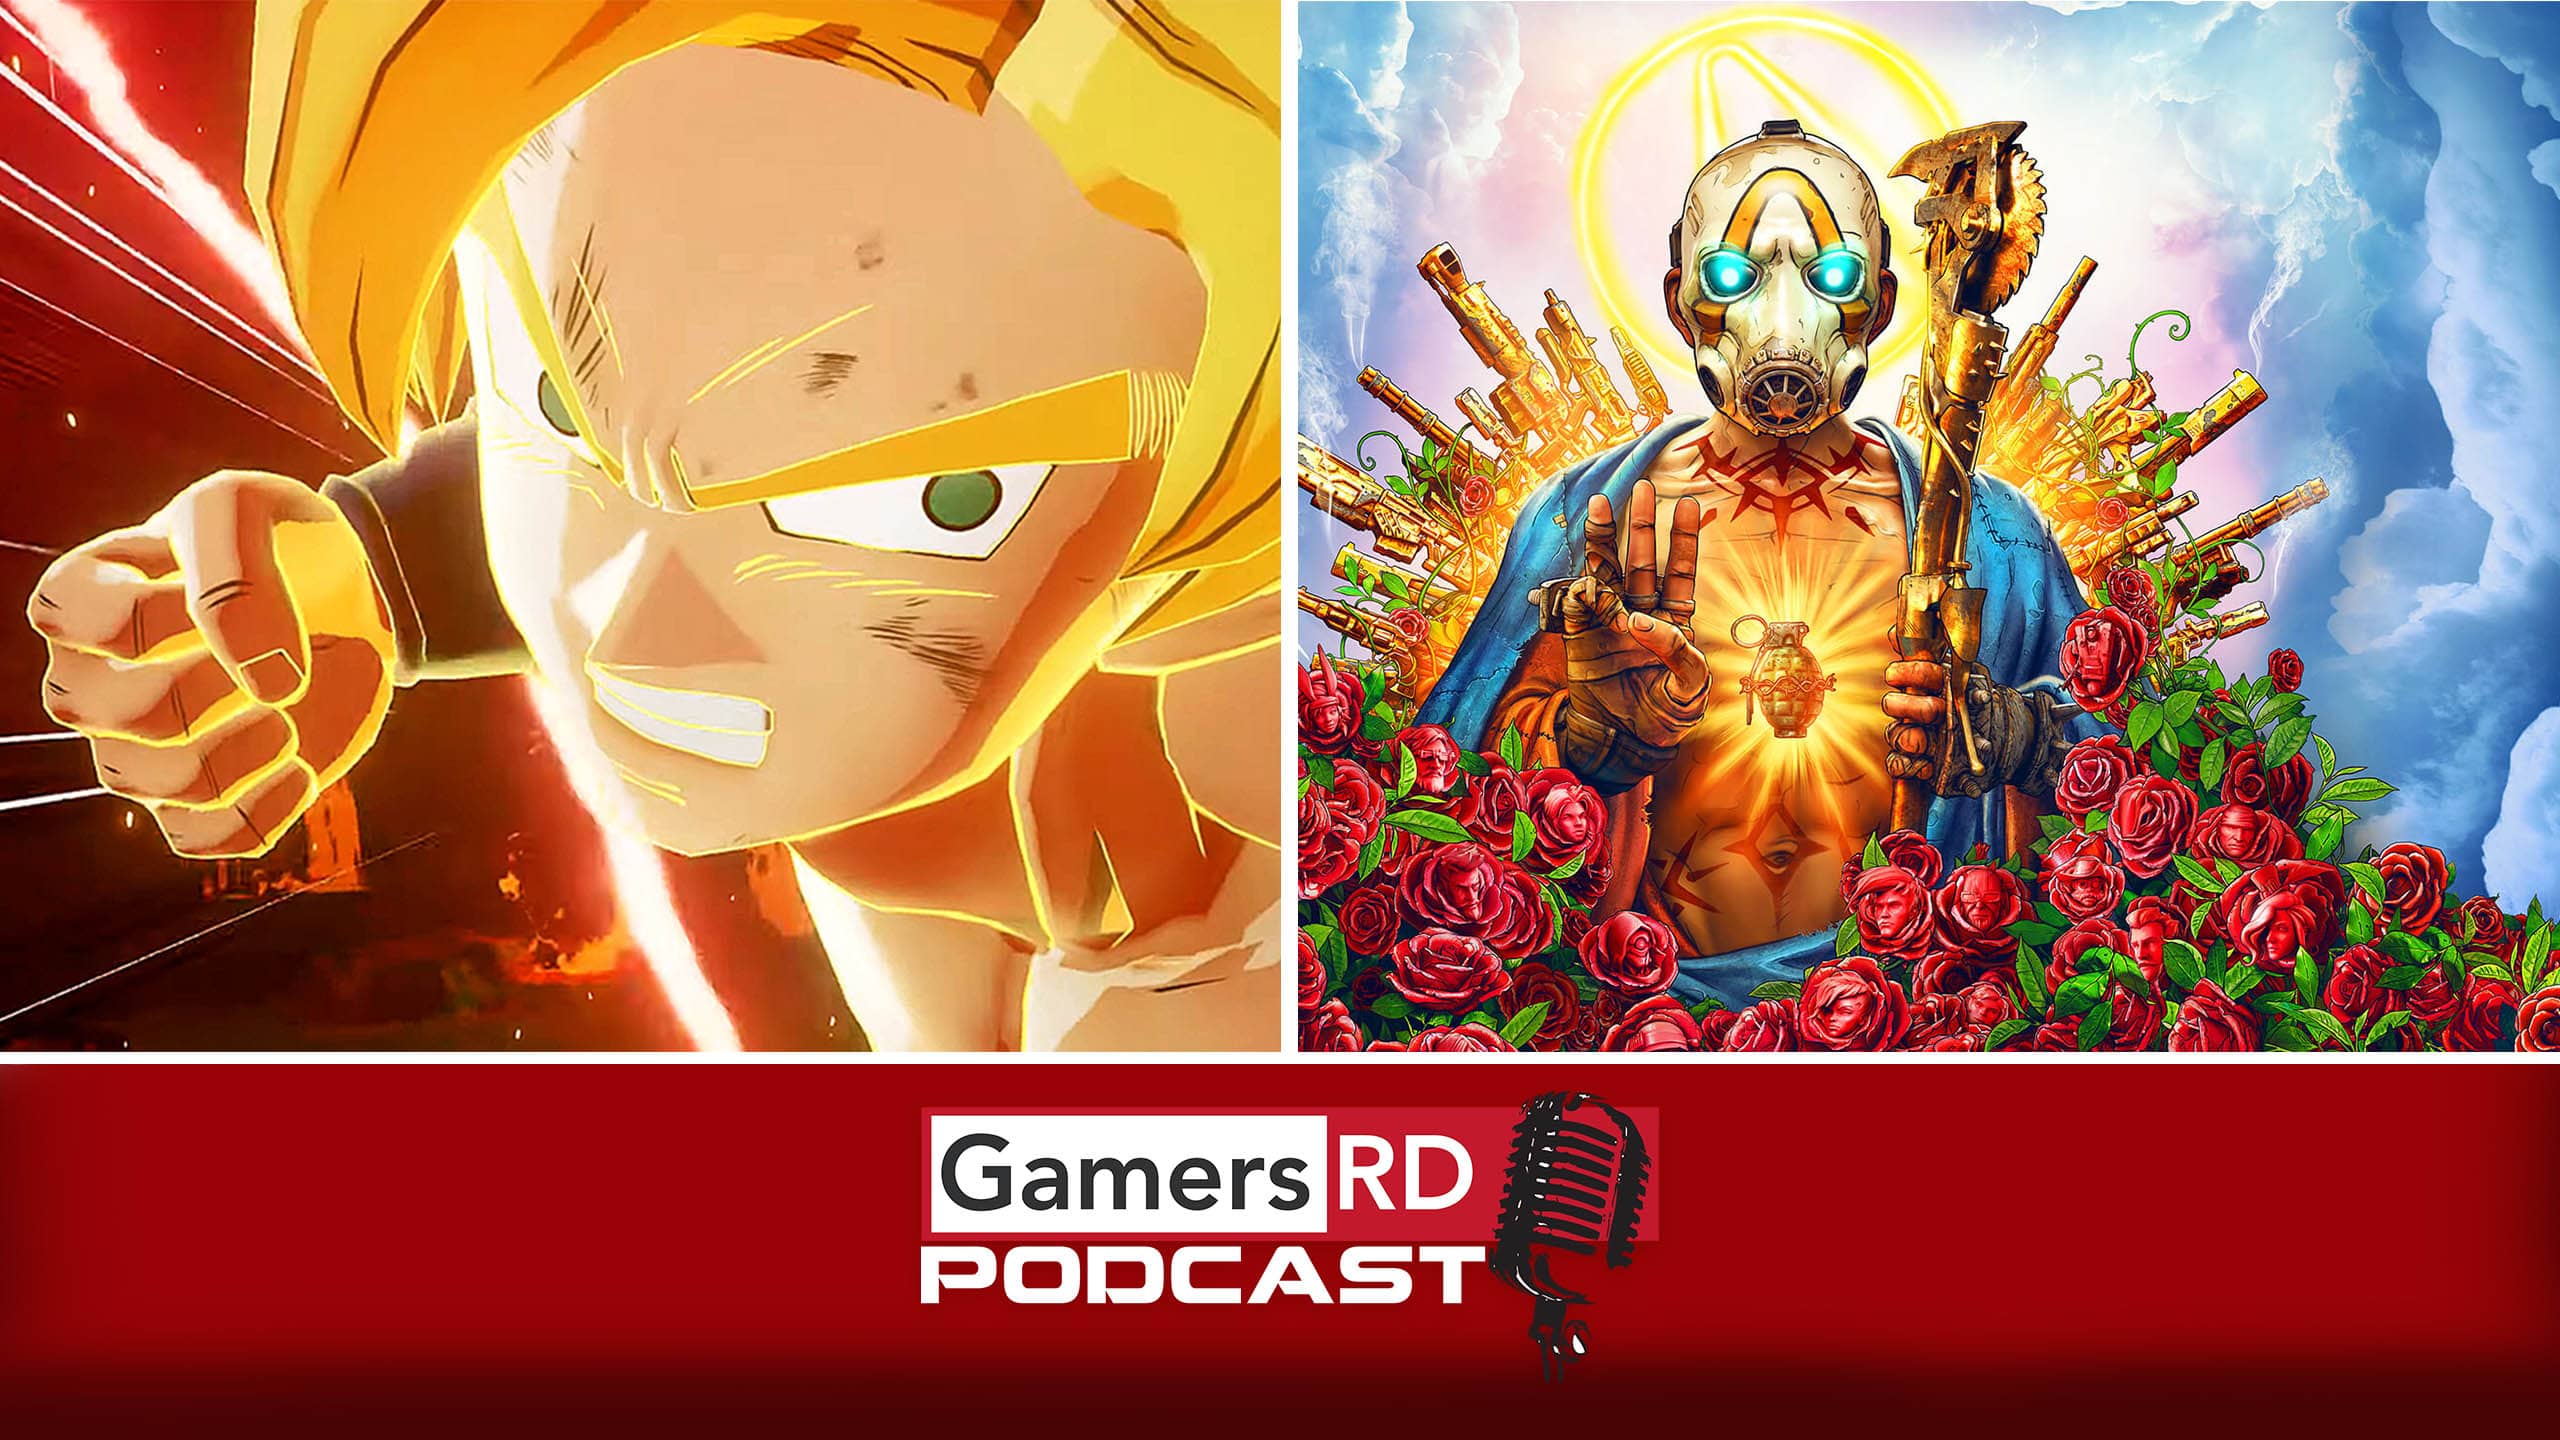 GamersRD Podcast #76 Impresiones de Dragon Ball Z Kakarot y Borderlands 3, E3 2019